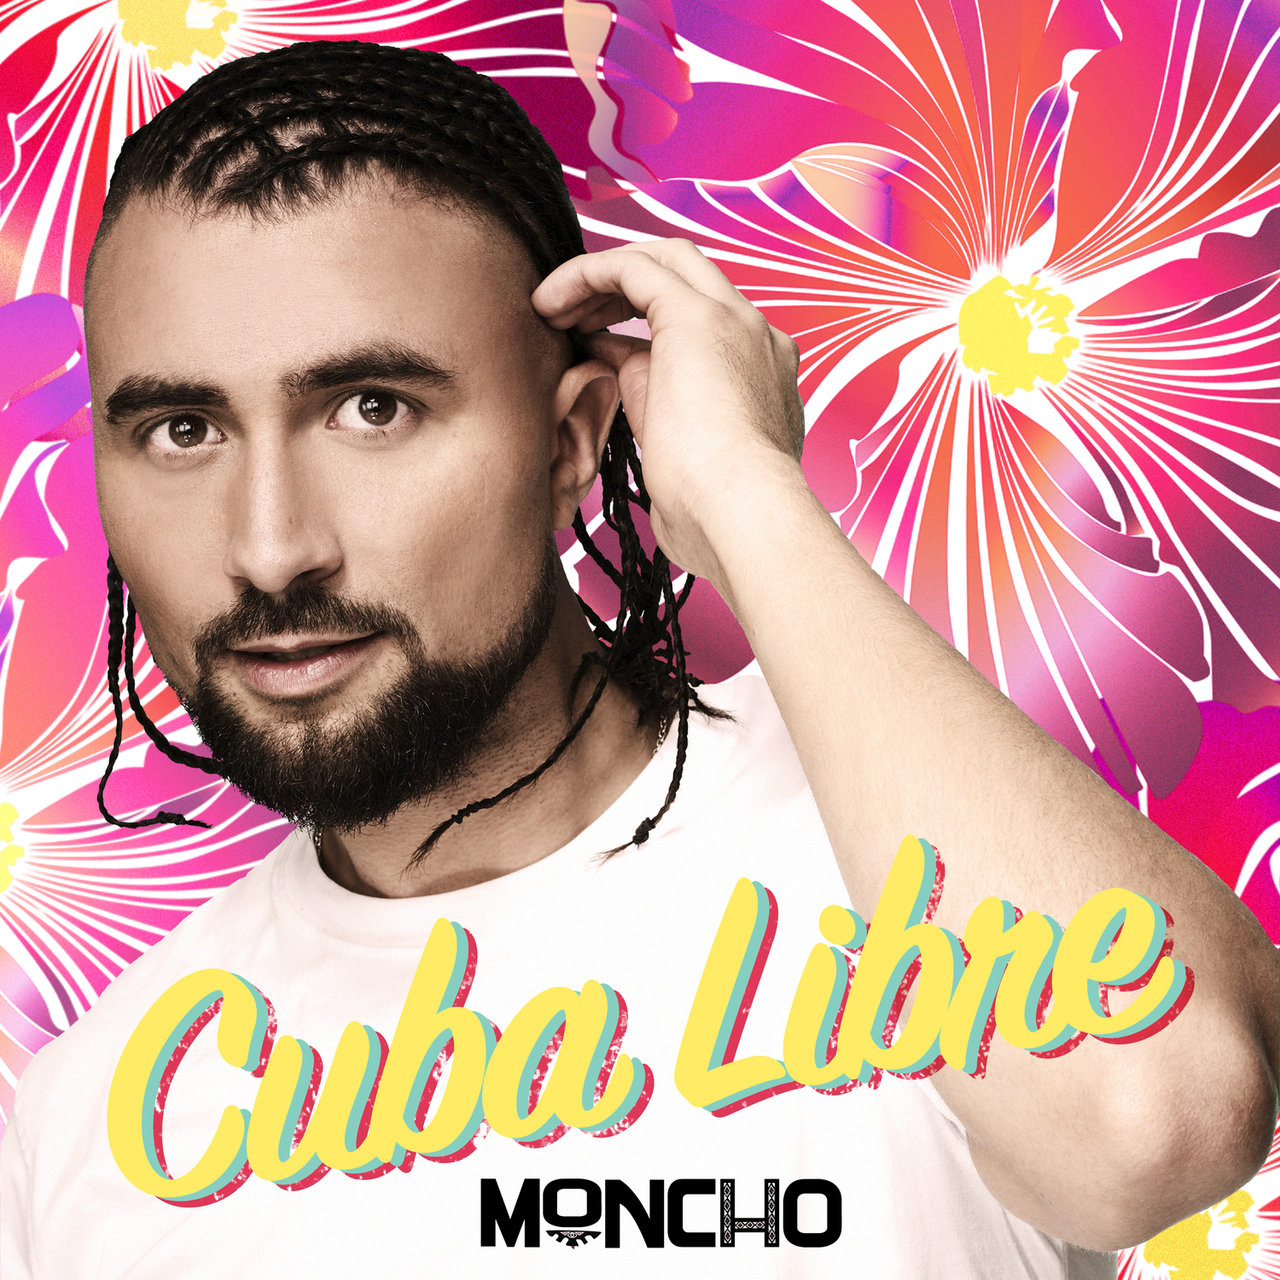 Moncho — Cuba Libre cover artwork